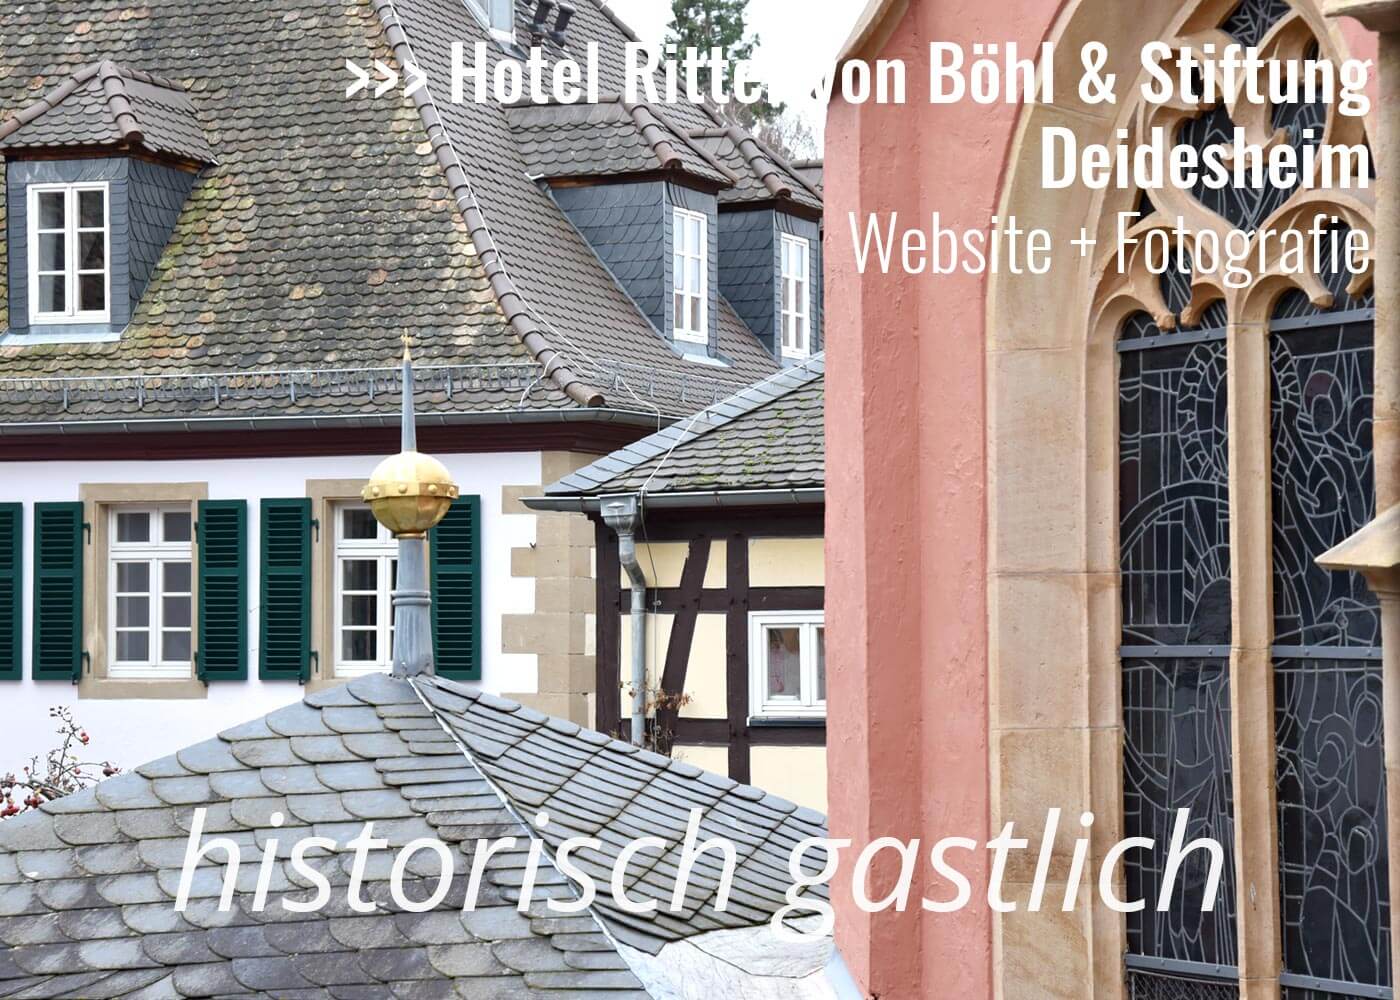 Hotel & Cafe Ritter von Böhl, Deidesheim - Website und Fotografie